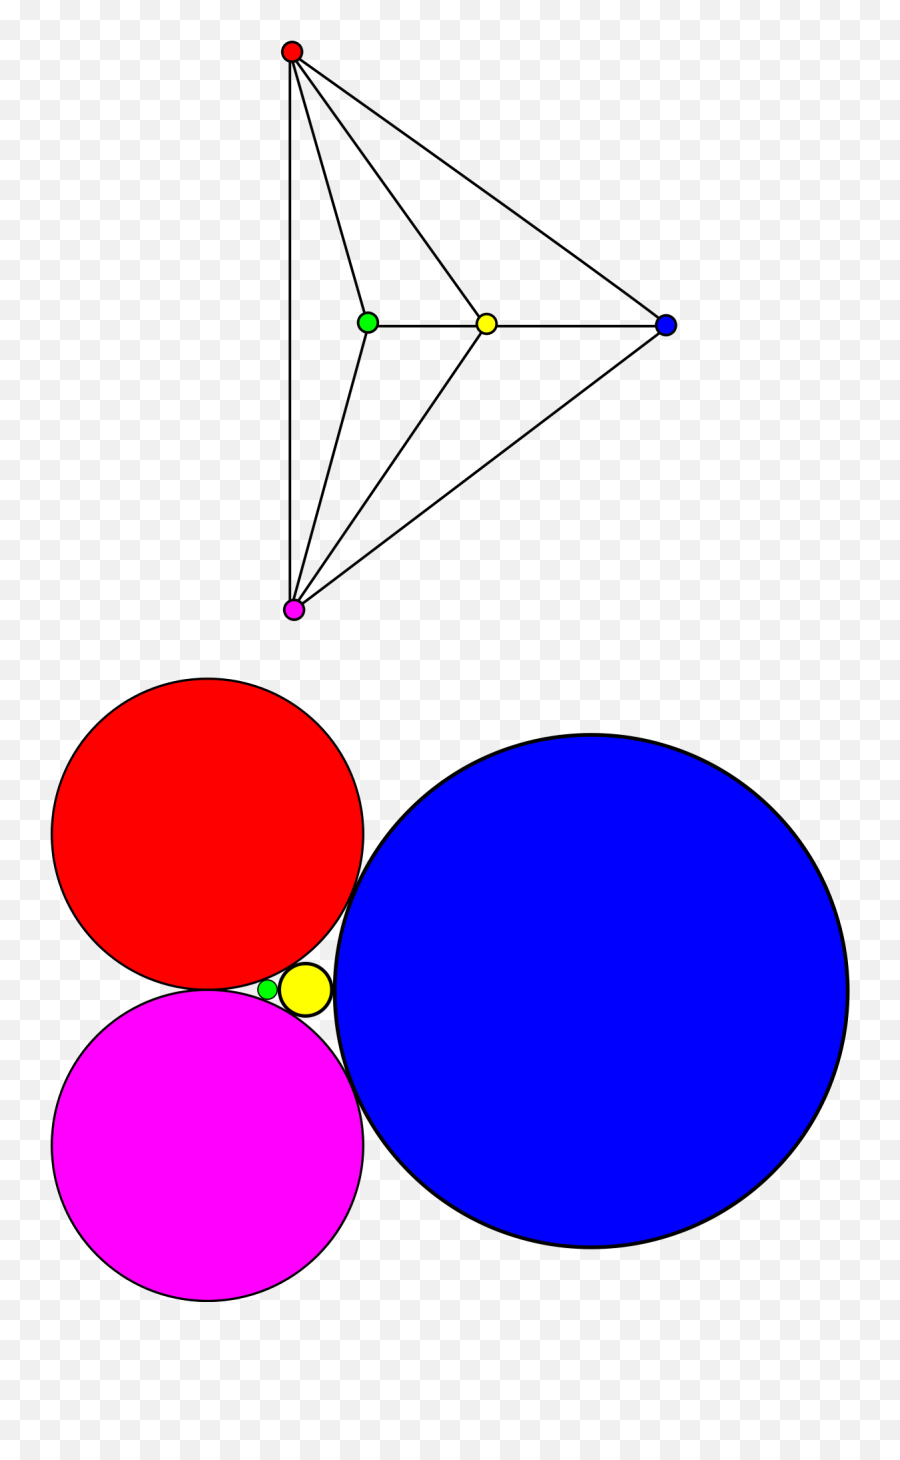 Circle Packing Theorem - Wikipedia Dot Emoji,Drawn Circle Png